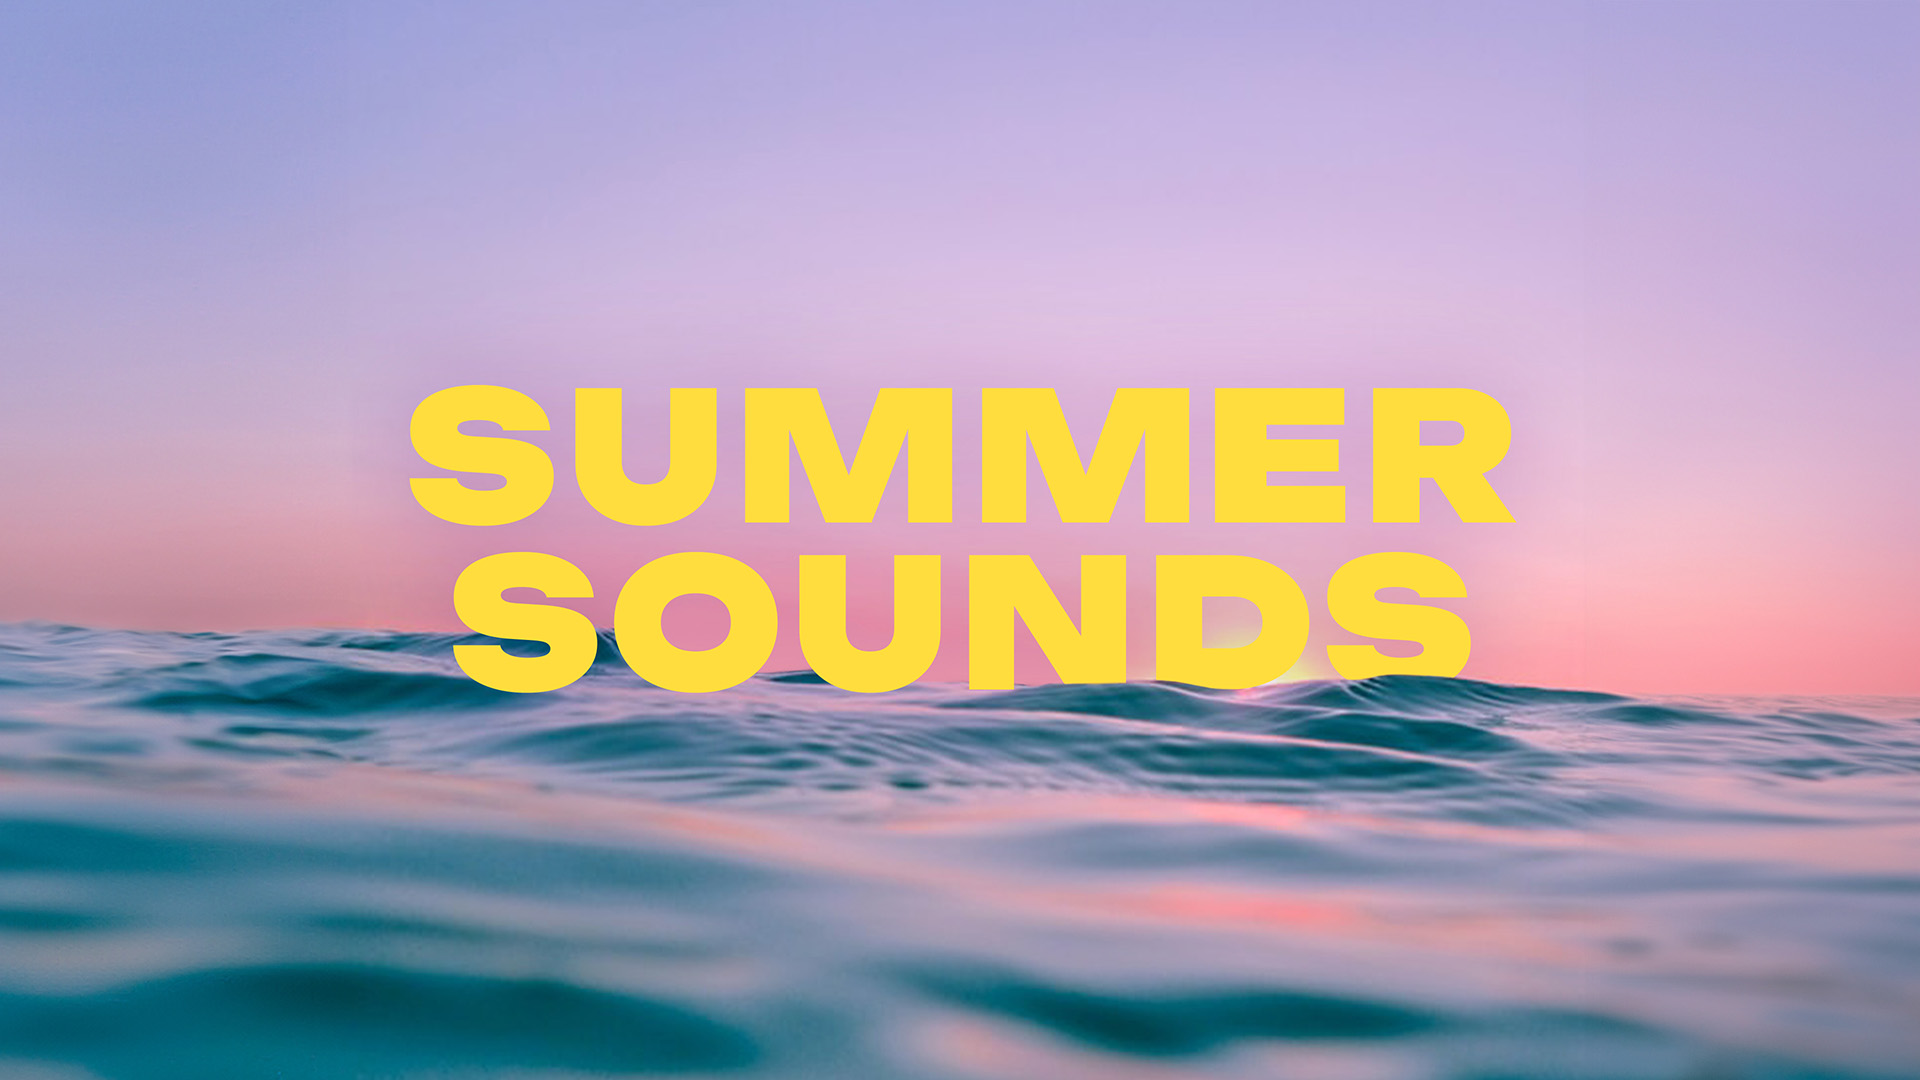 SiriusXM Summer Sounds